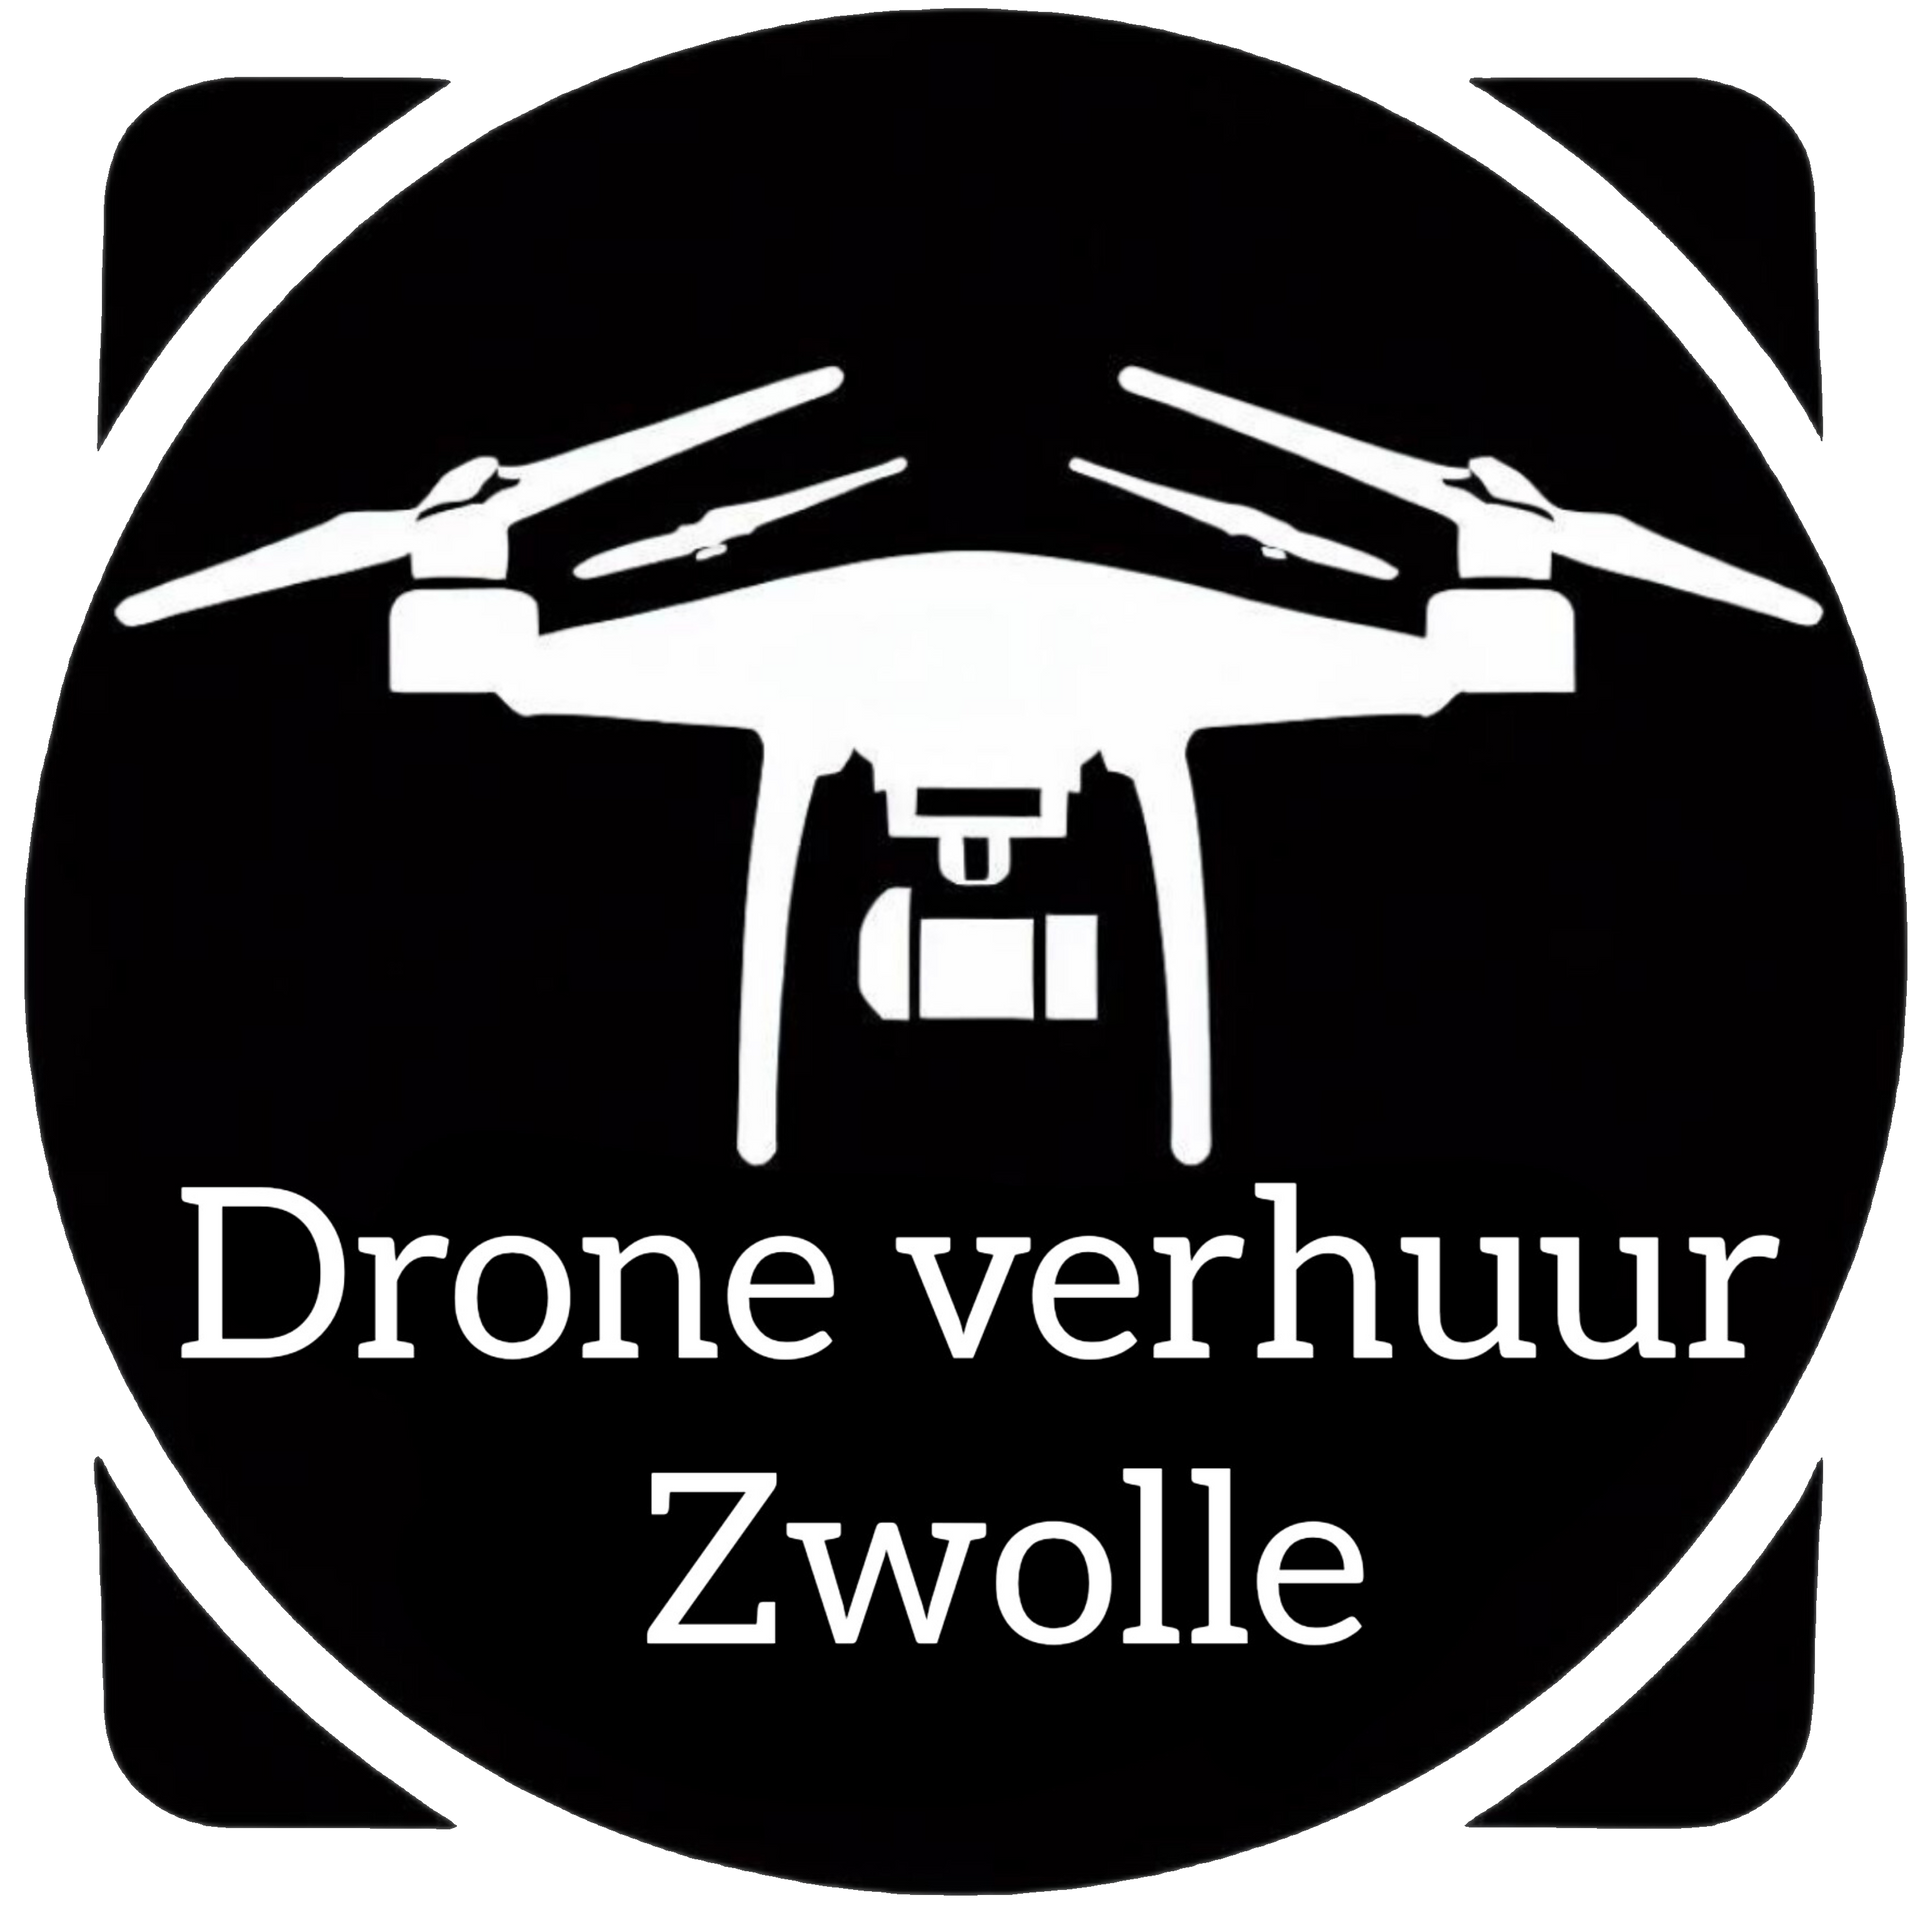 Drone verhuur Zwolle